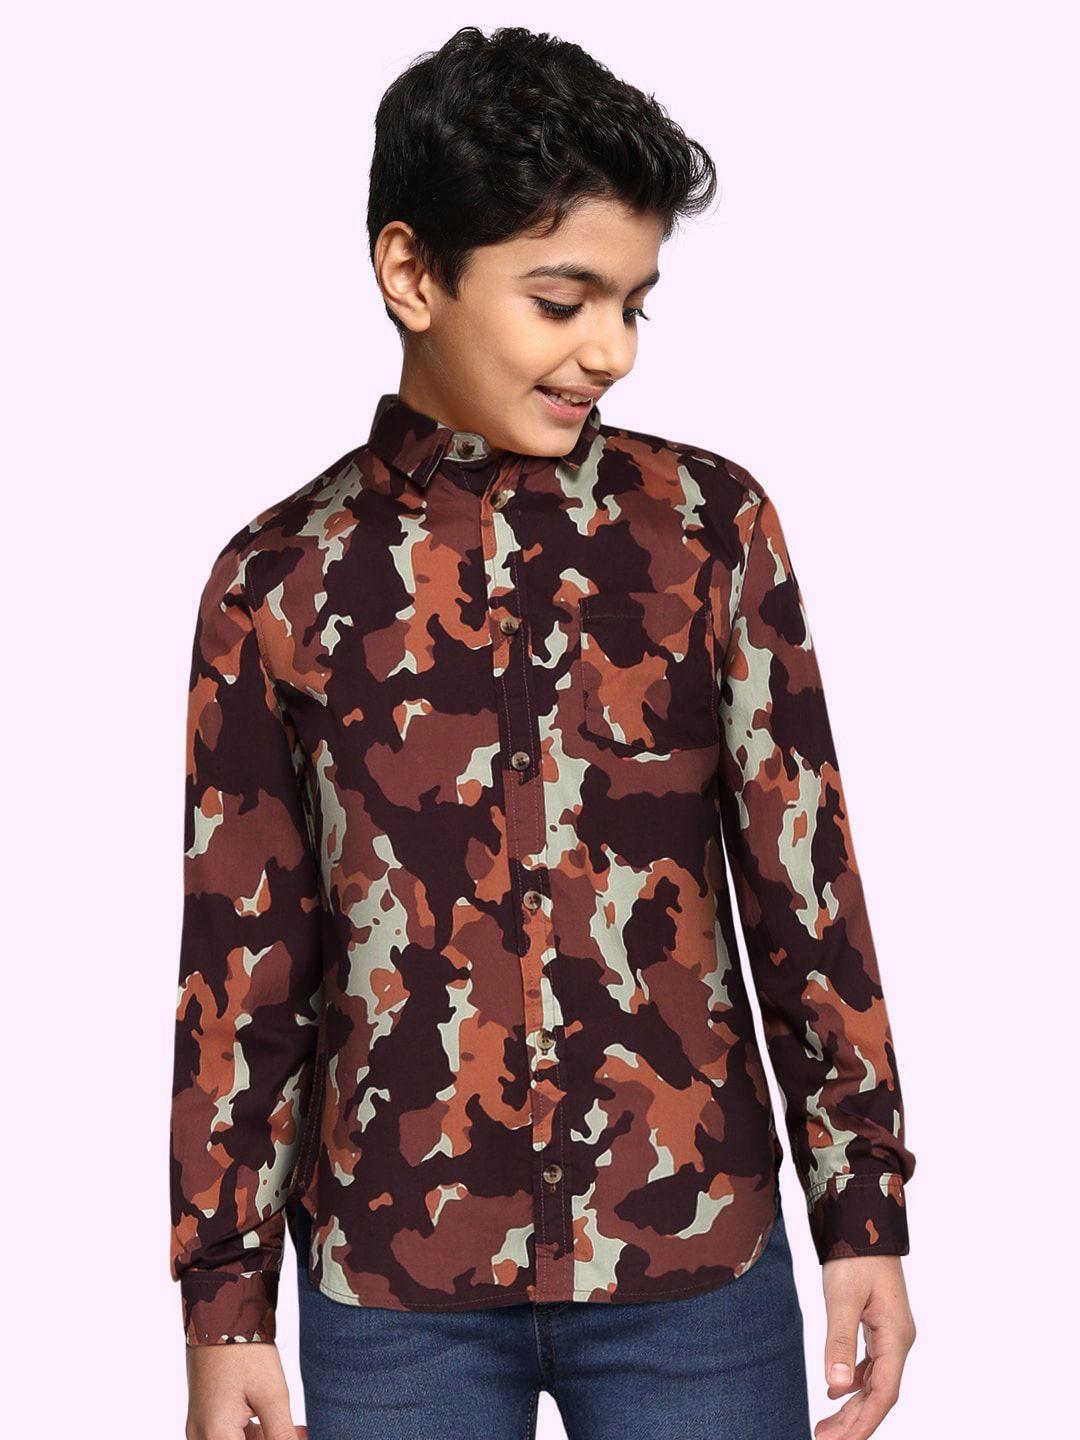 marks & spencer boys burgundy opaque printed casual shirt